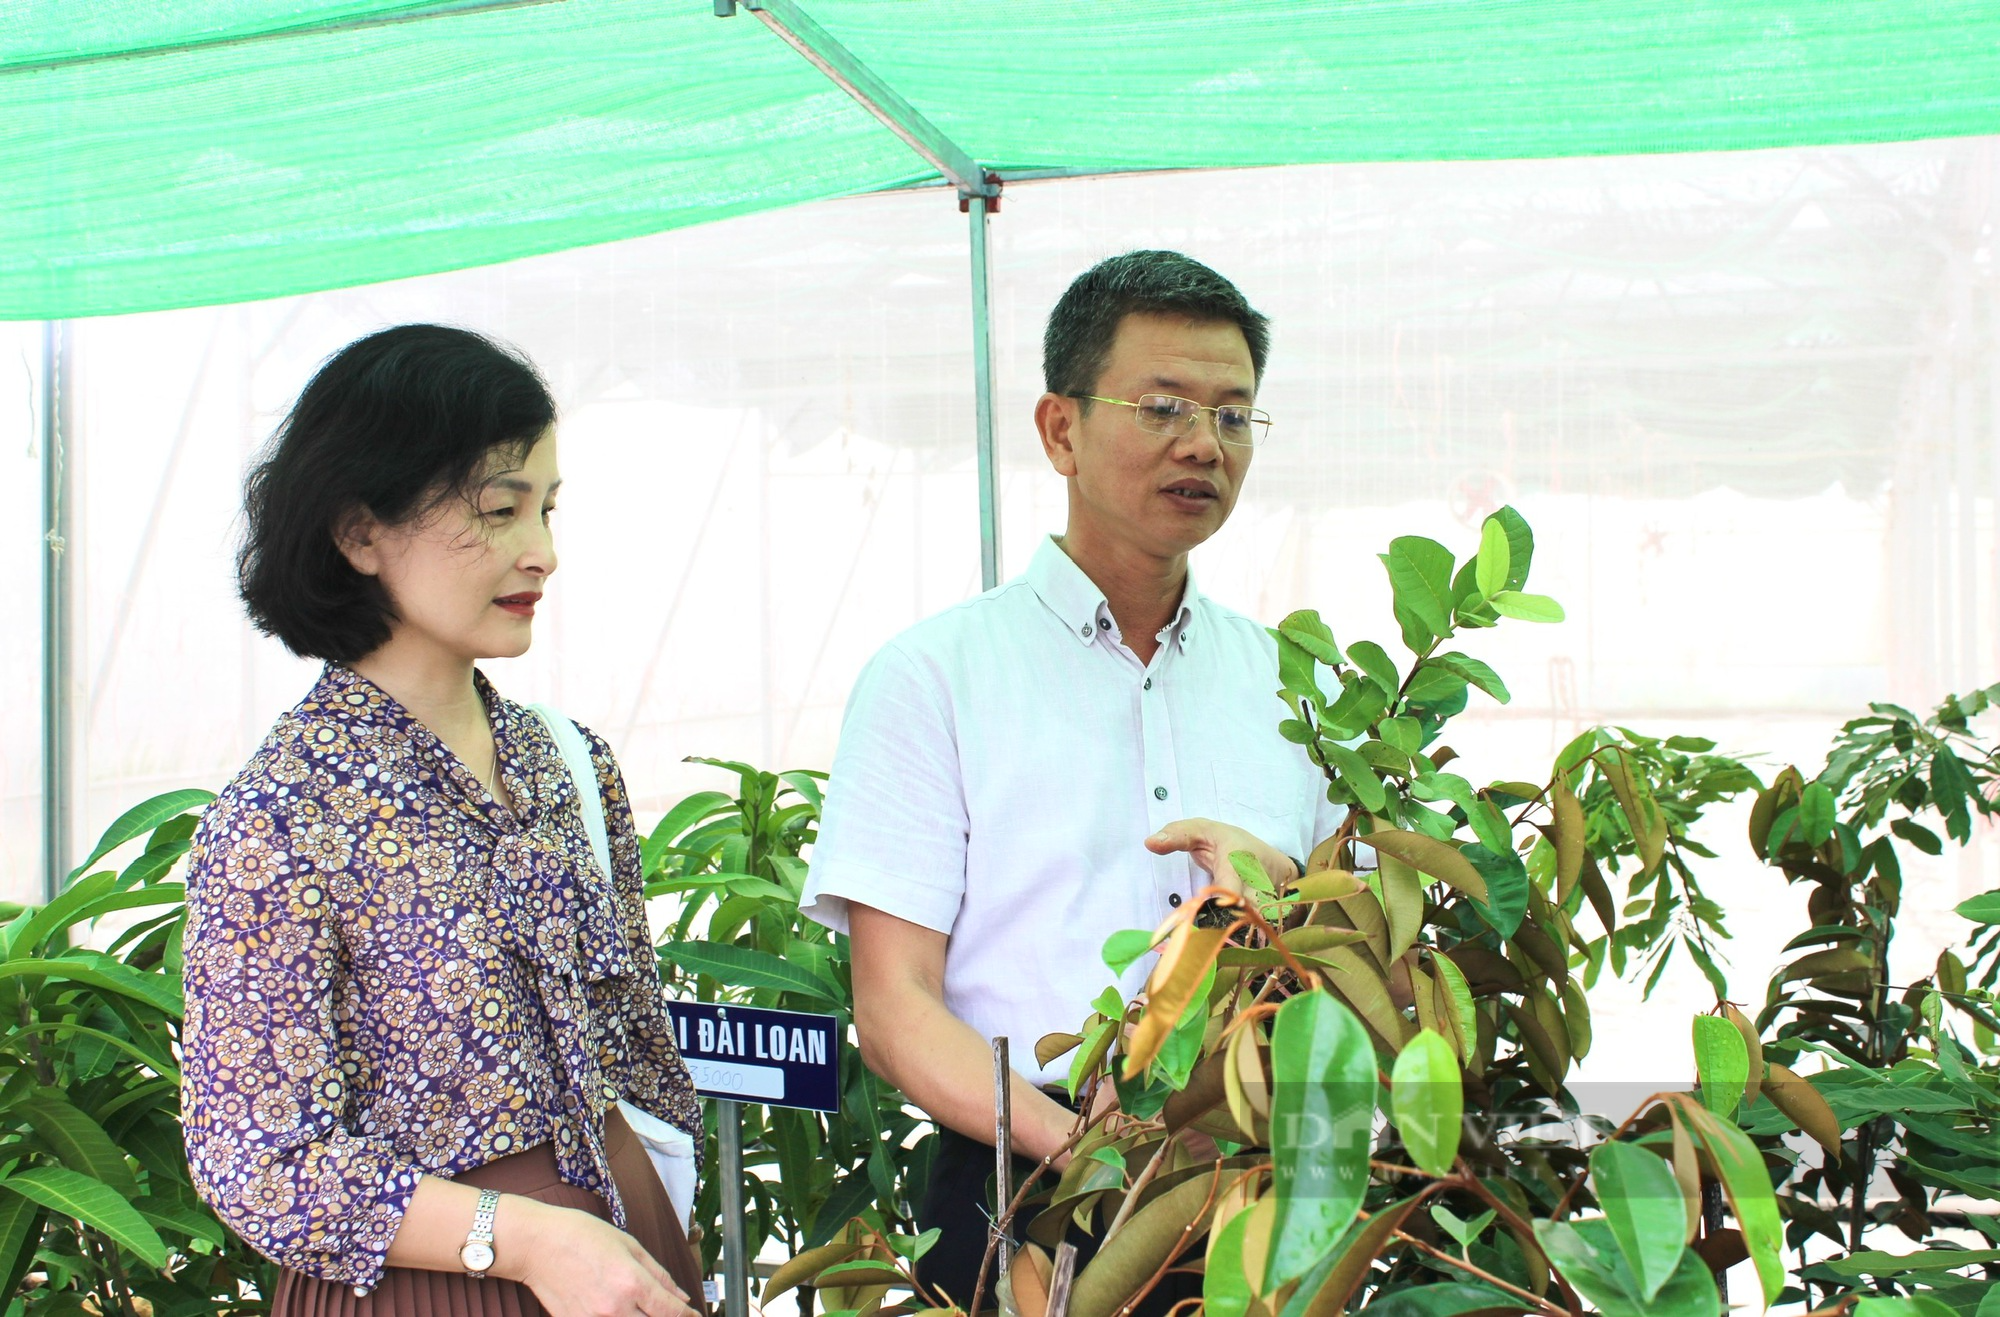 Hội Nông dân Quảng Bình khai trương Điểm cung ứng cây trồng chất lượng, năng suất cho nông dân - Ảnh 3.